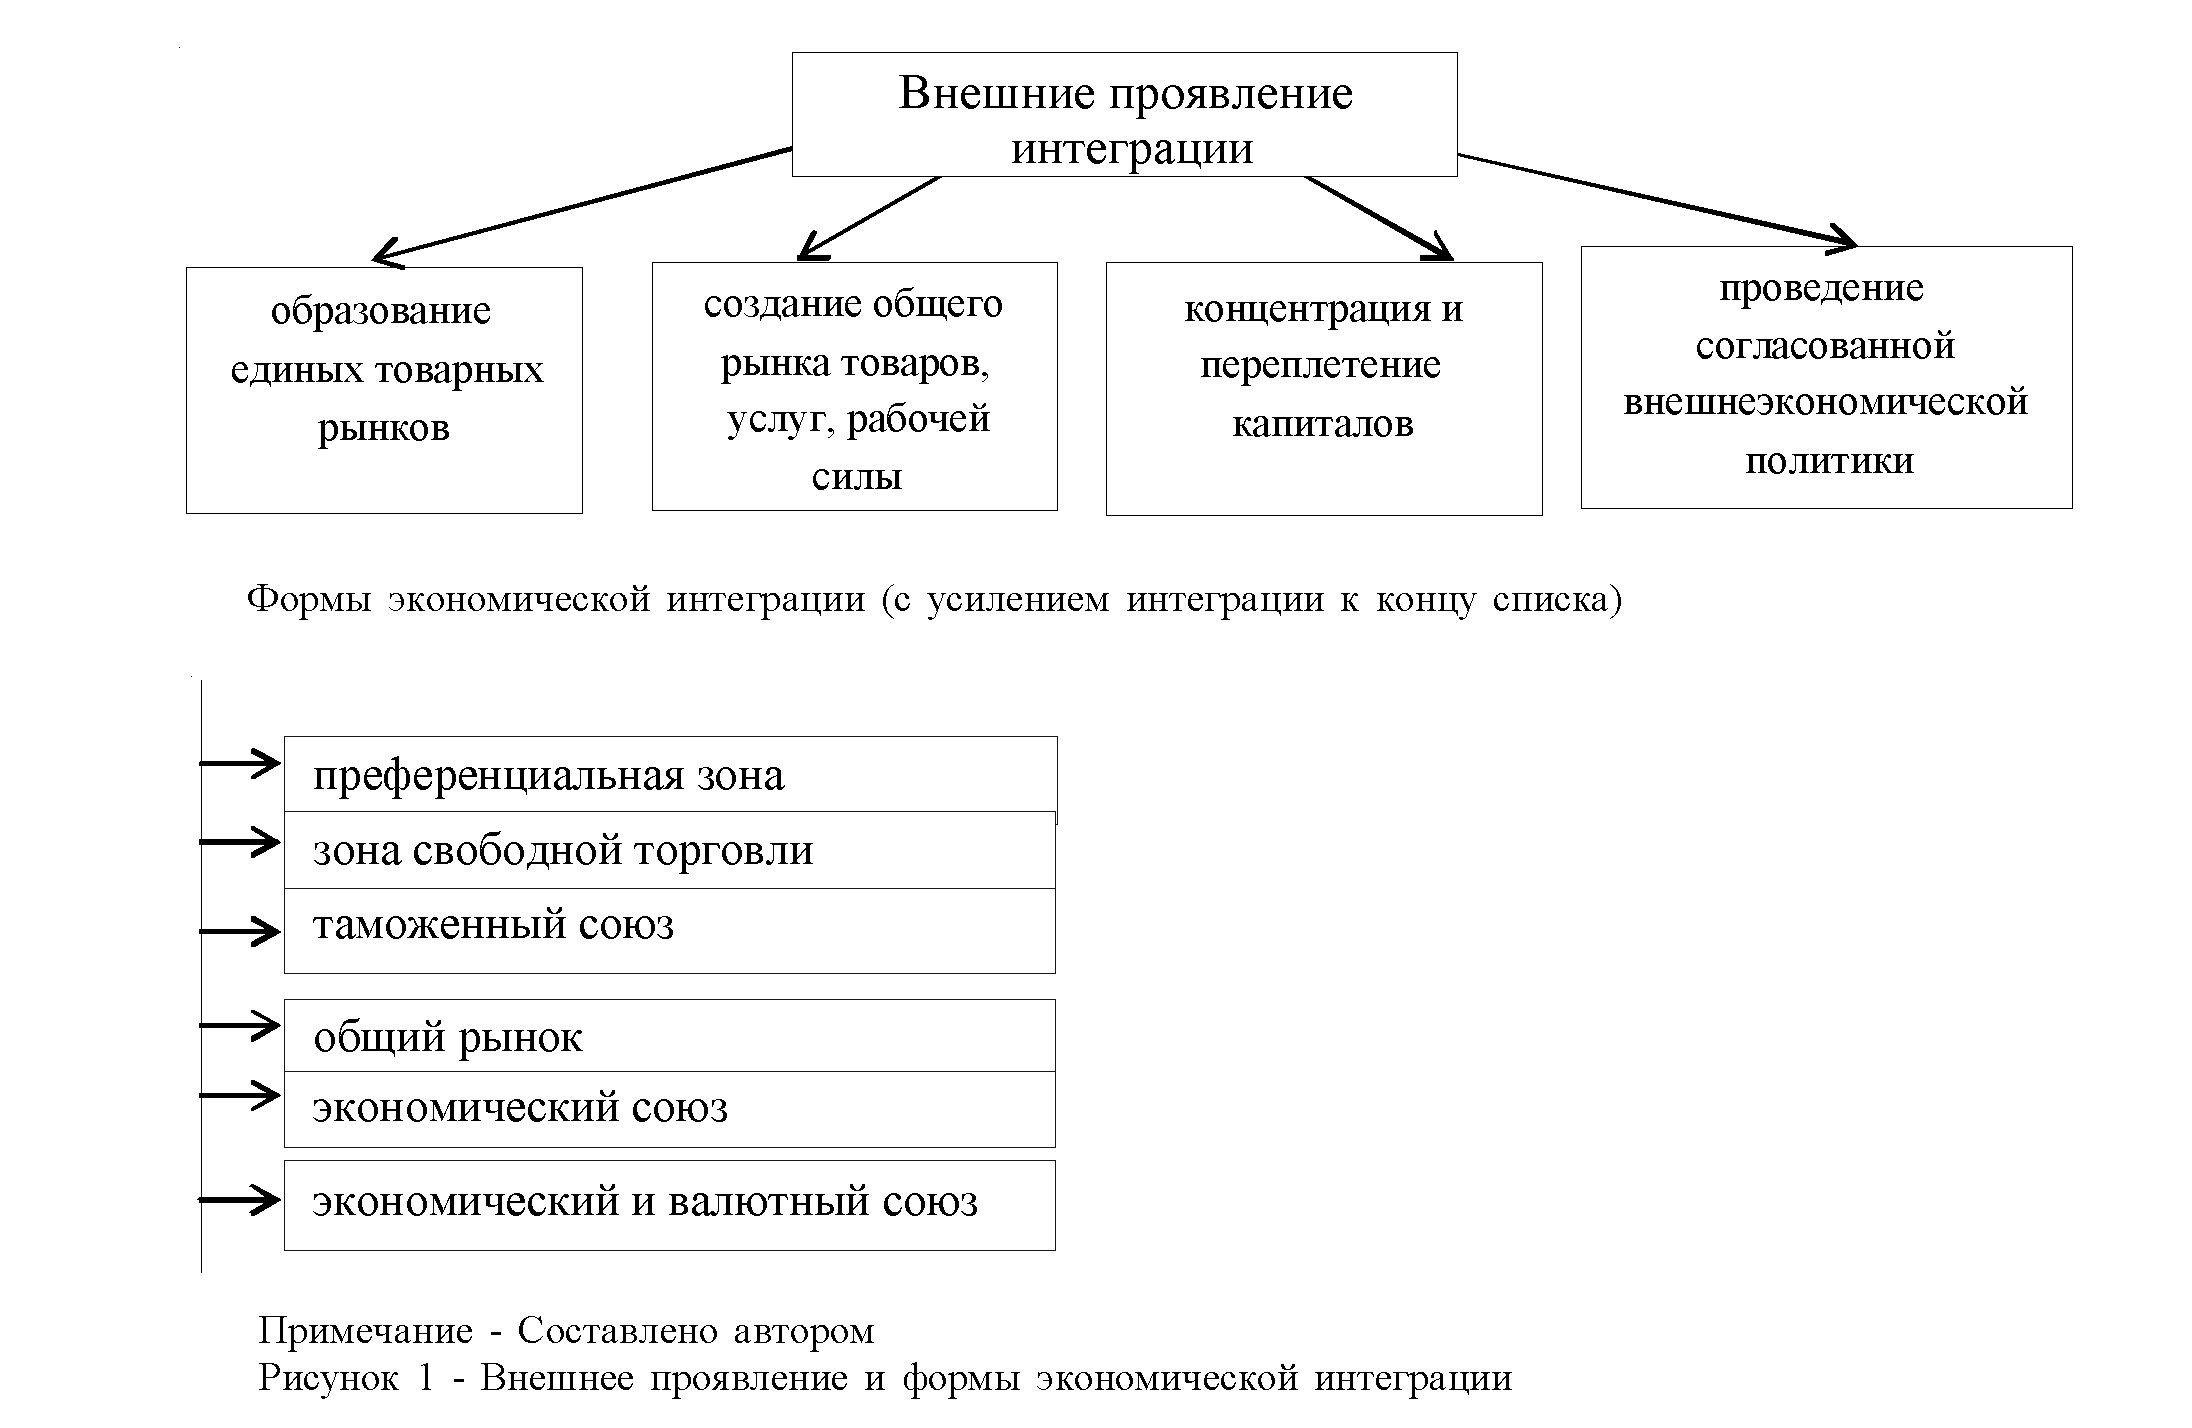 Об особенностях влияния интеграционных процессов на экономику Казахстана